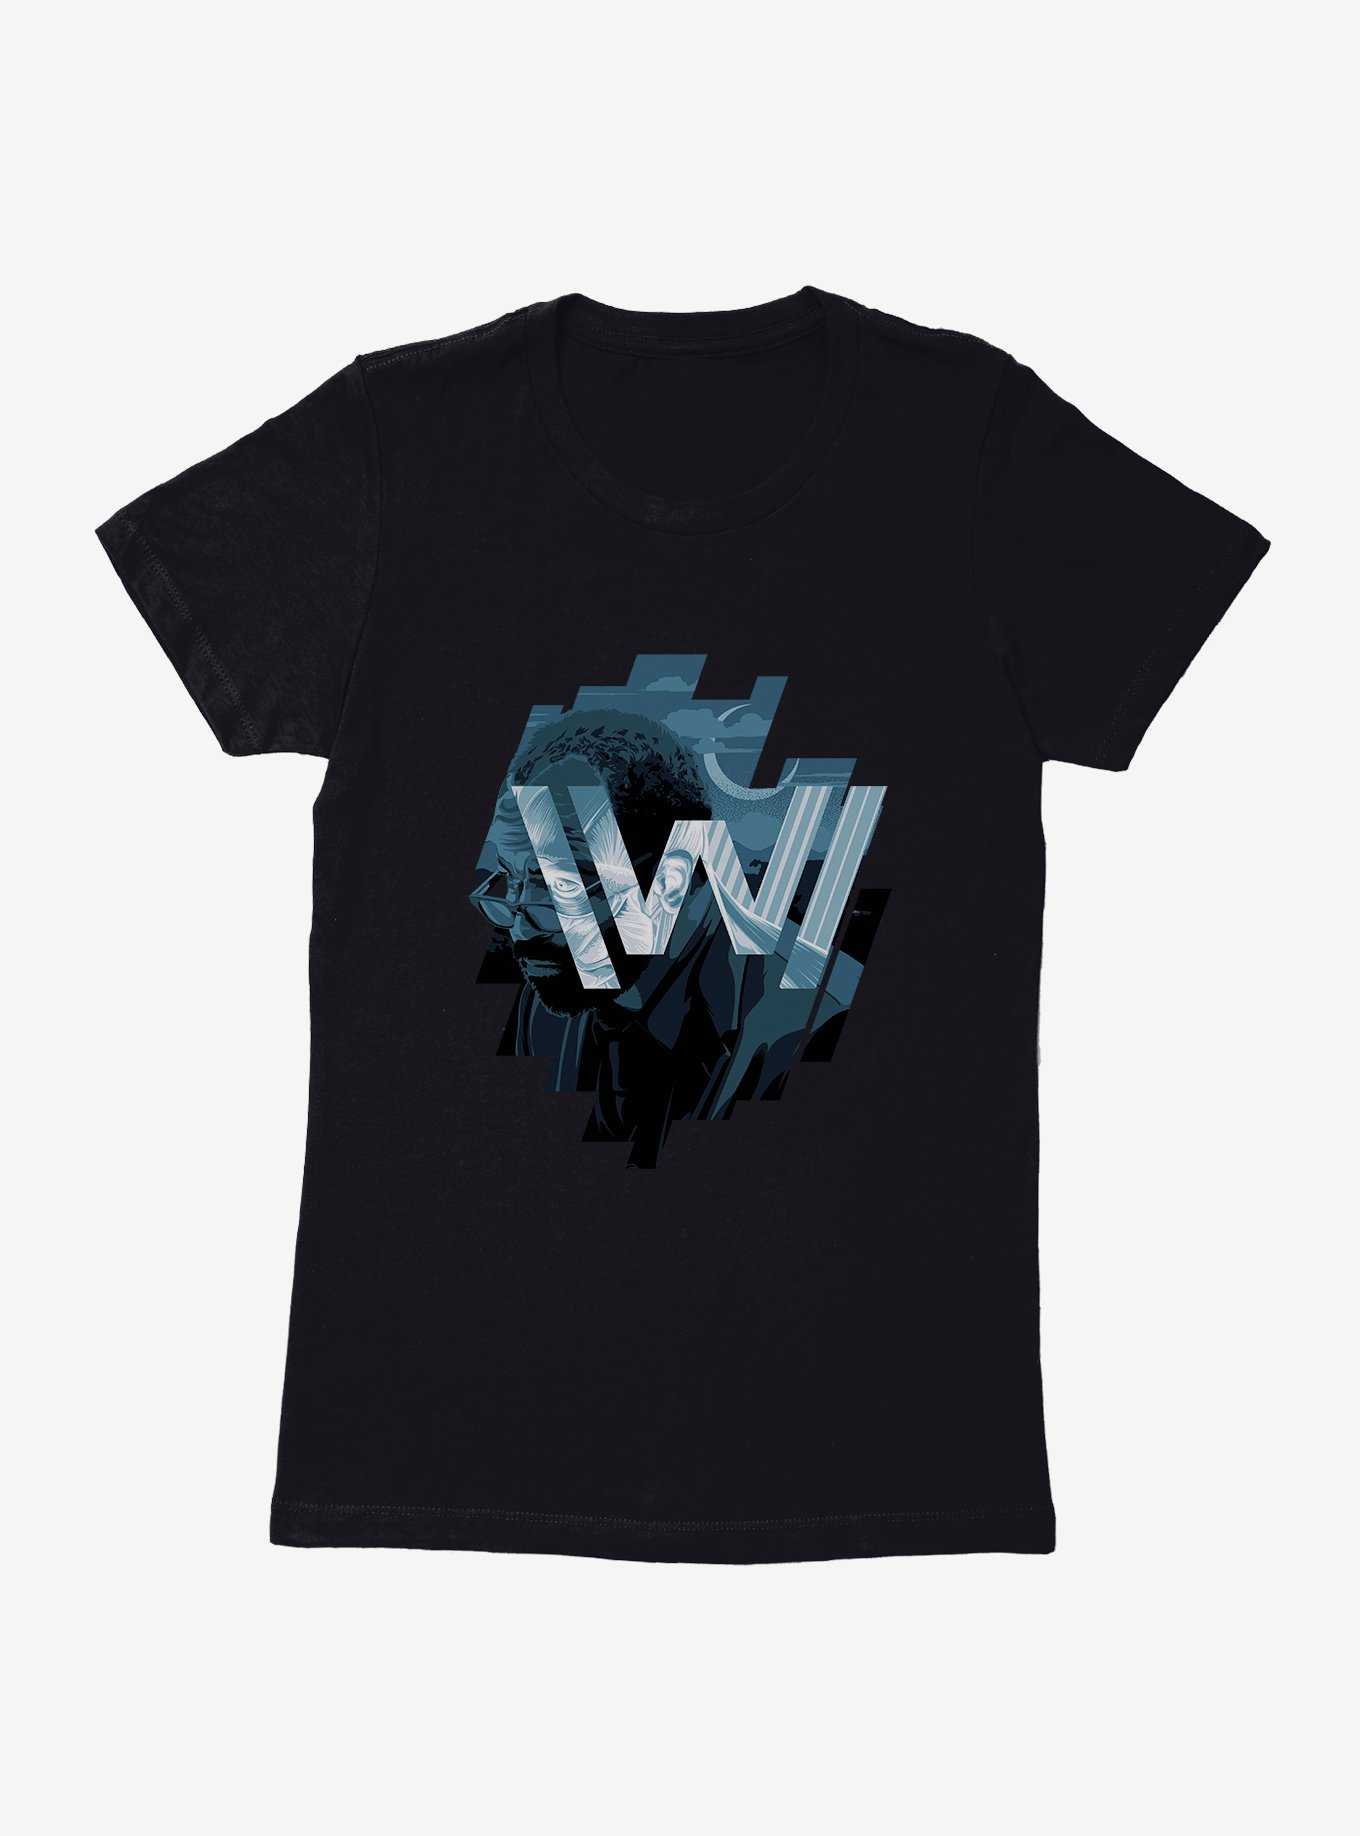 Westworld Western Dreams Womens T-Shirt, , hi-res